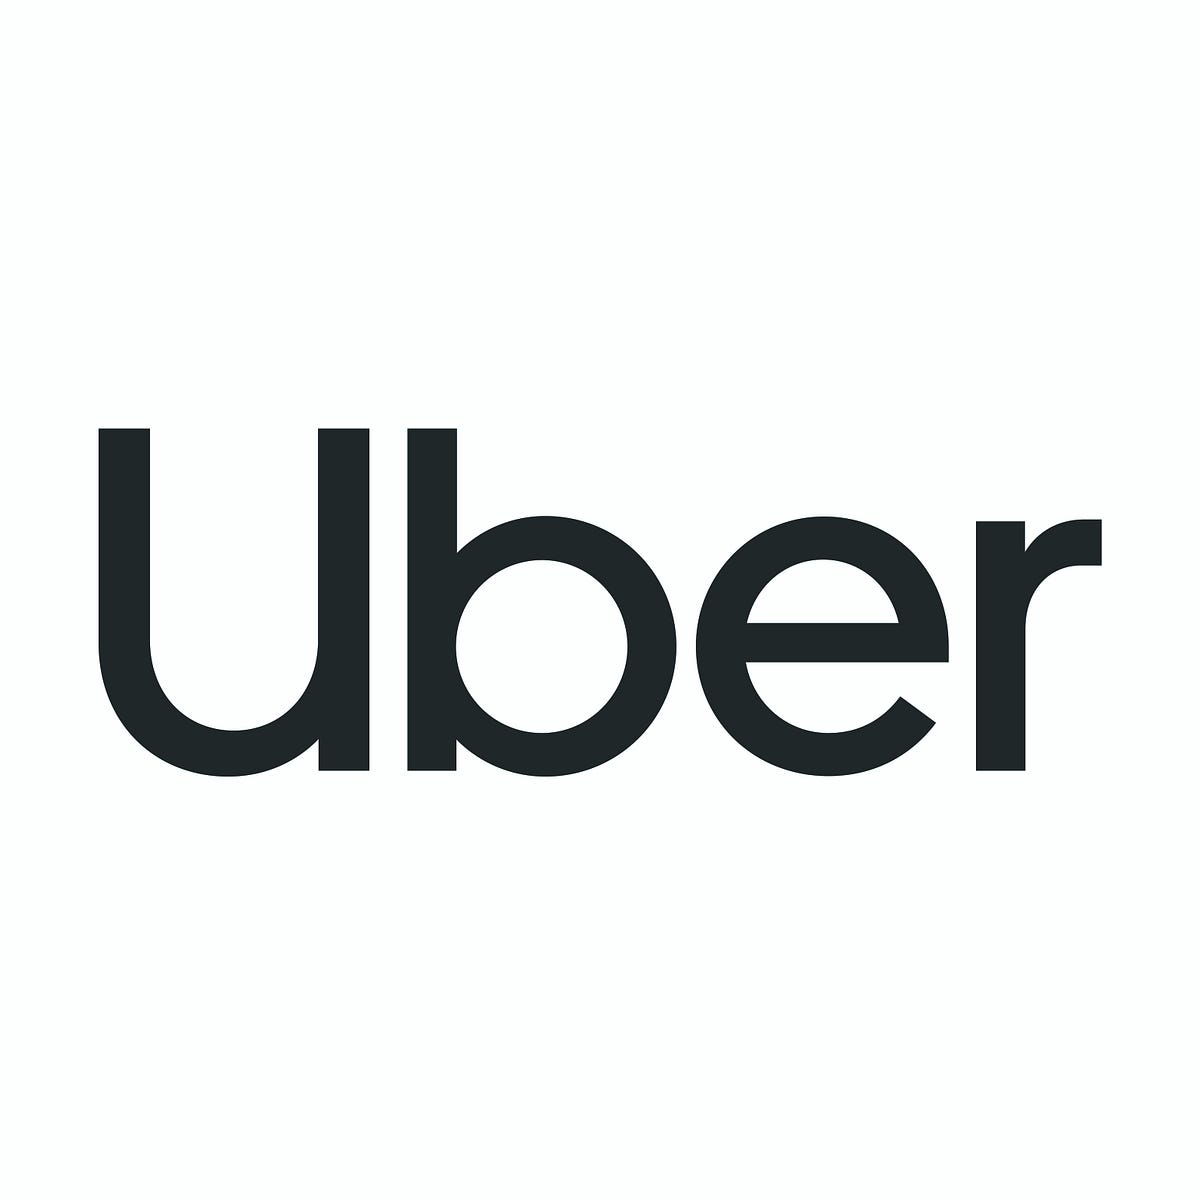 Uber Design – Medium